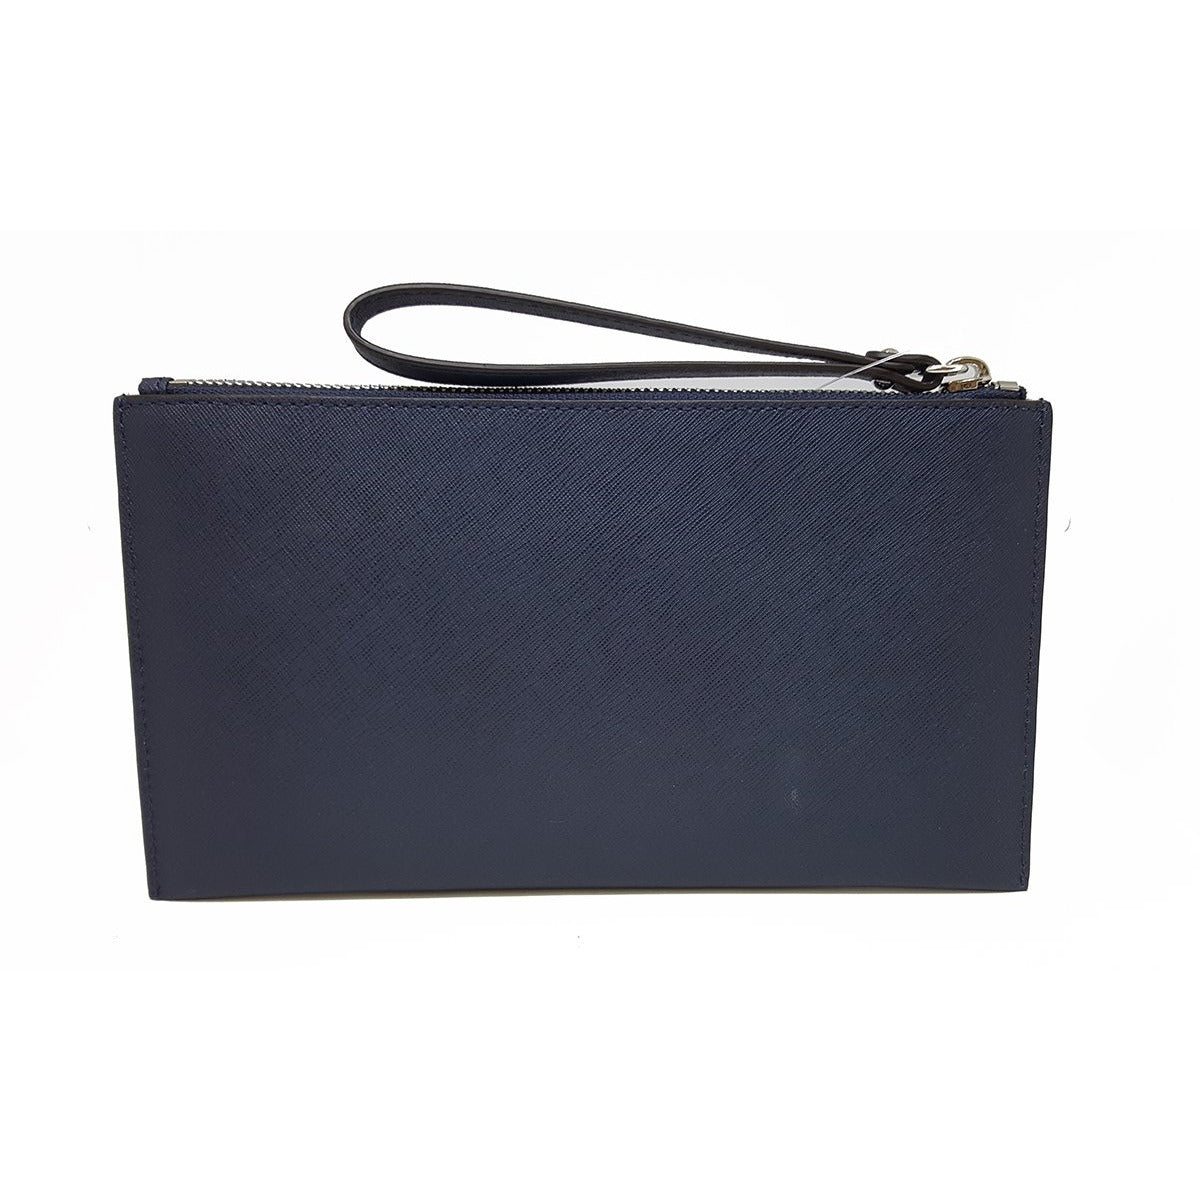 Michael Kors Box Clutch Handbags | Mercari